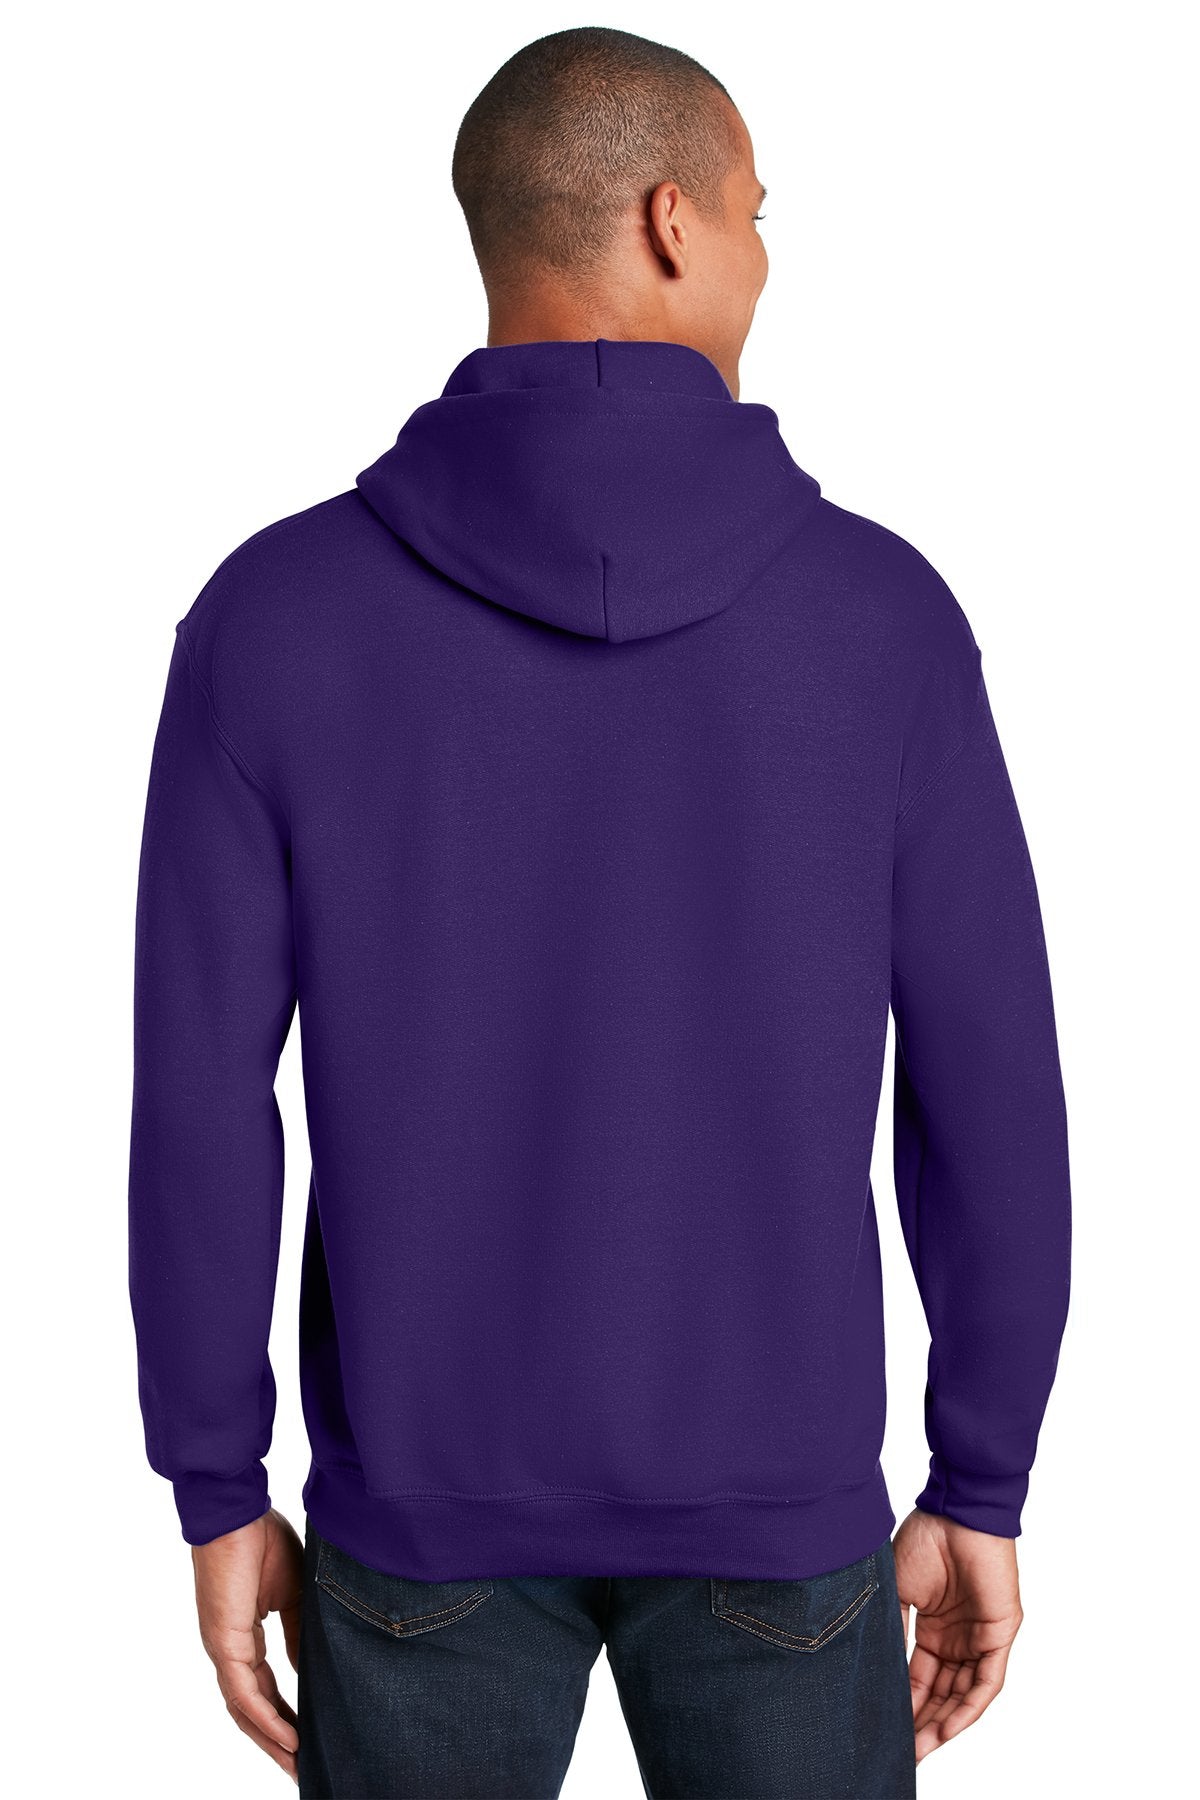 Gildan Heavy Blend Hooded Sweatshirt Purple